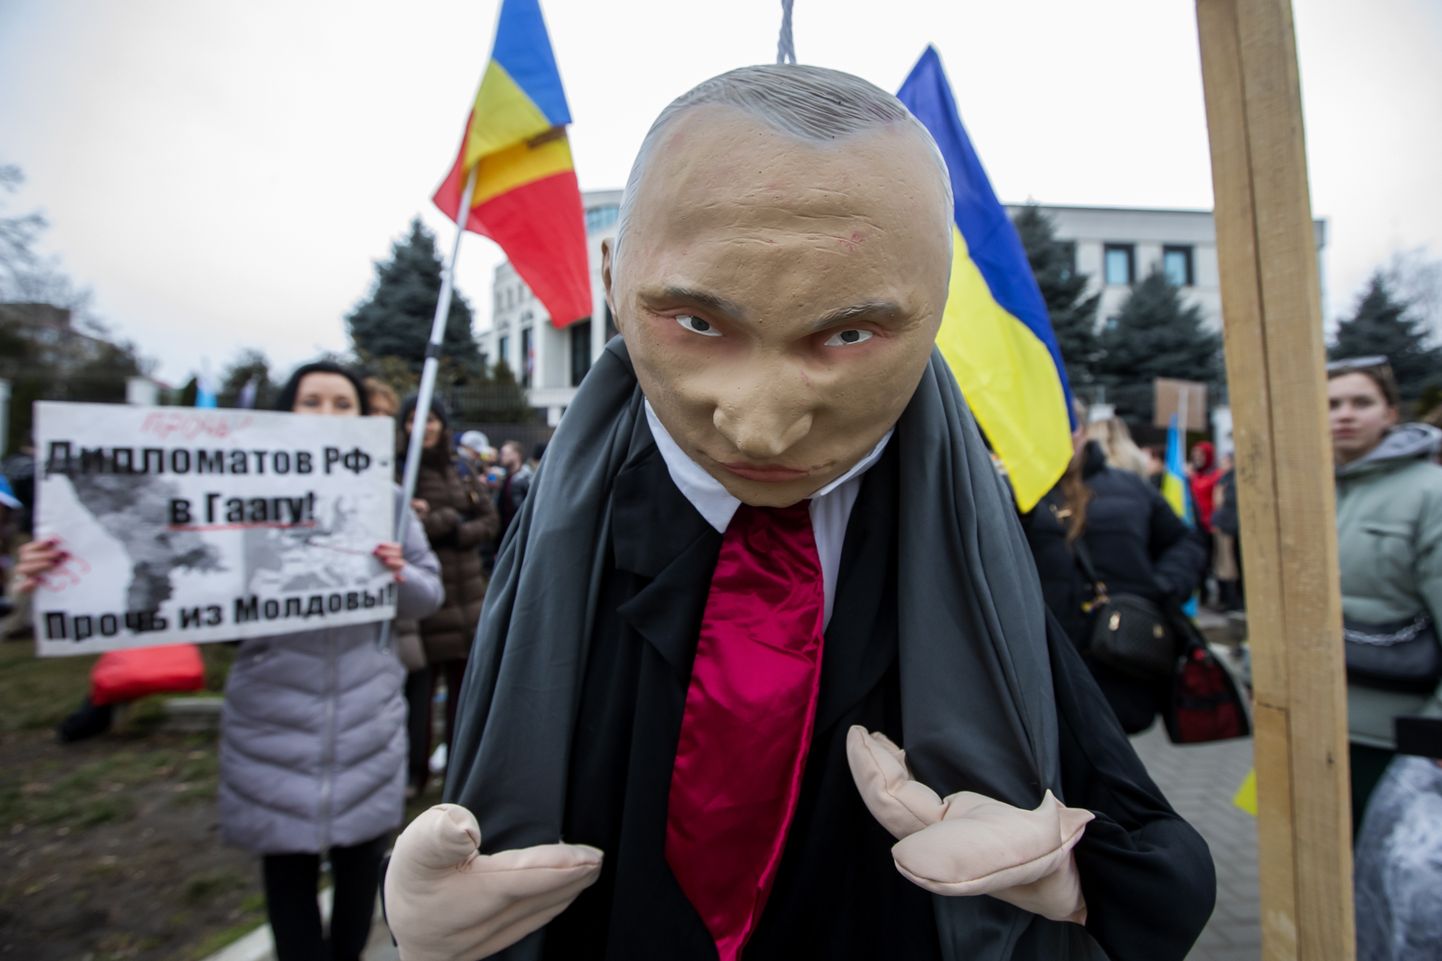 Venemaa agressiooni vastane meeleavaldus 24. veebruaril Chișinăus Vene saatkonna ees.